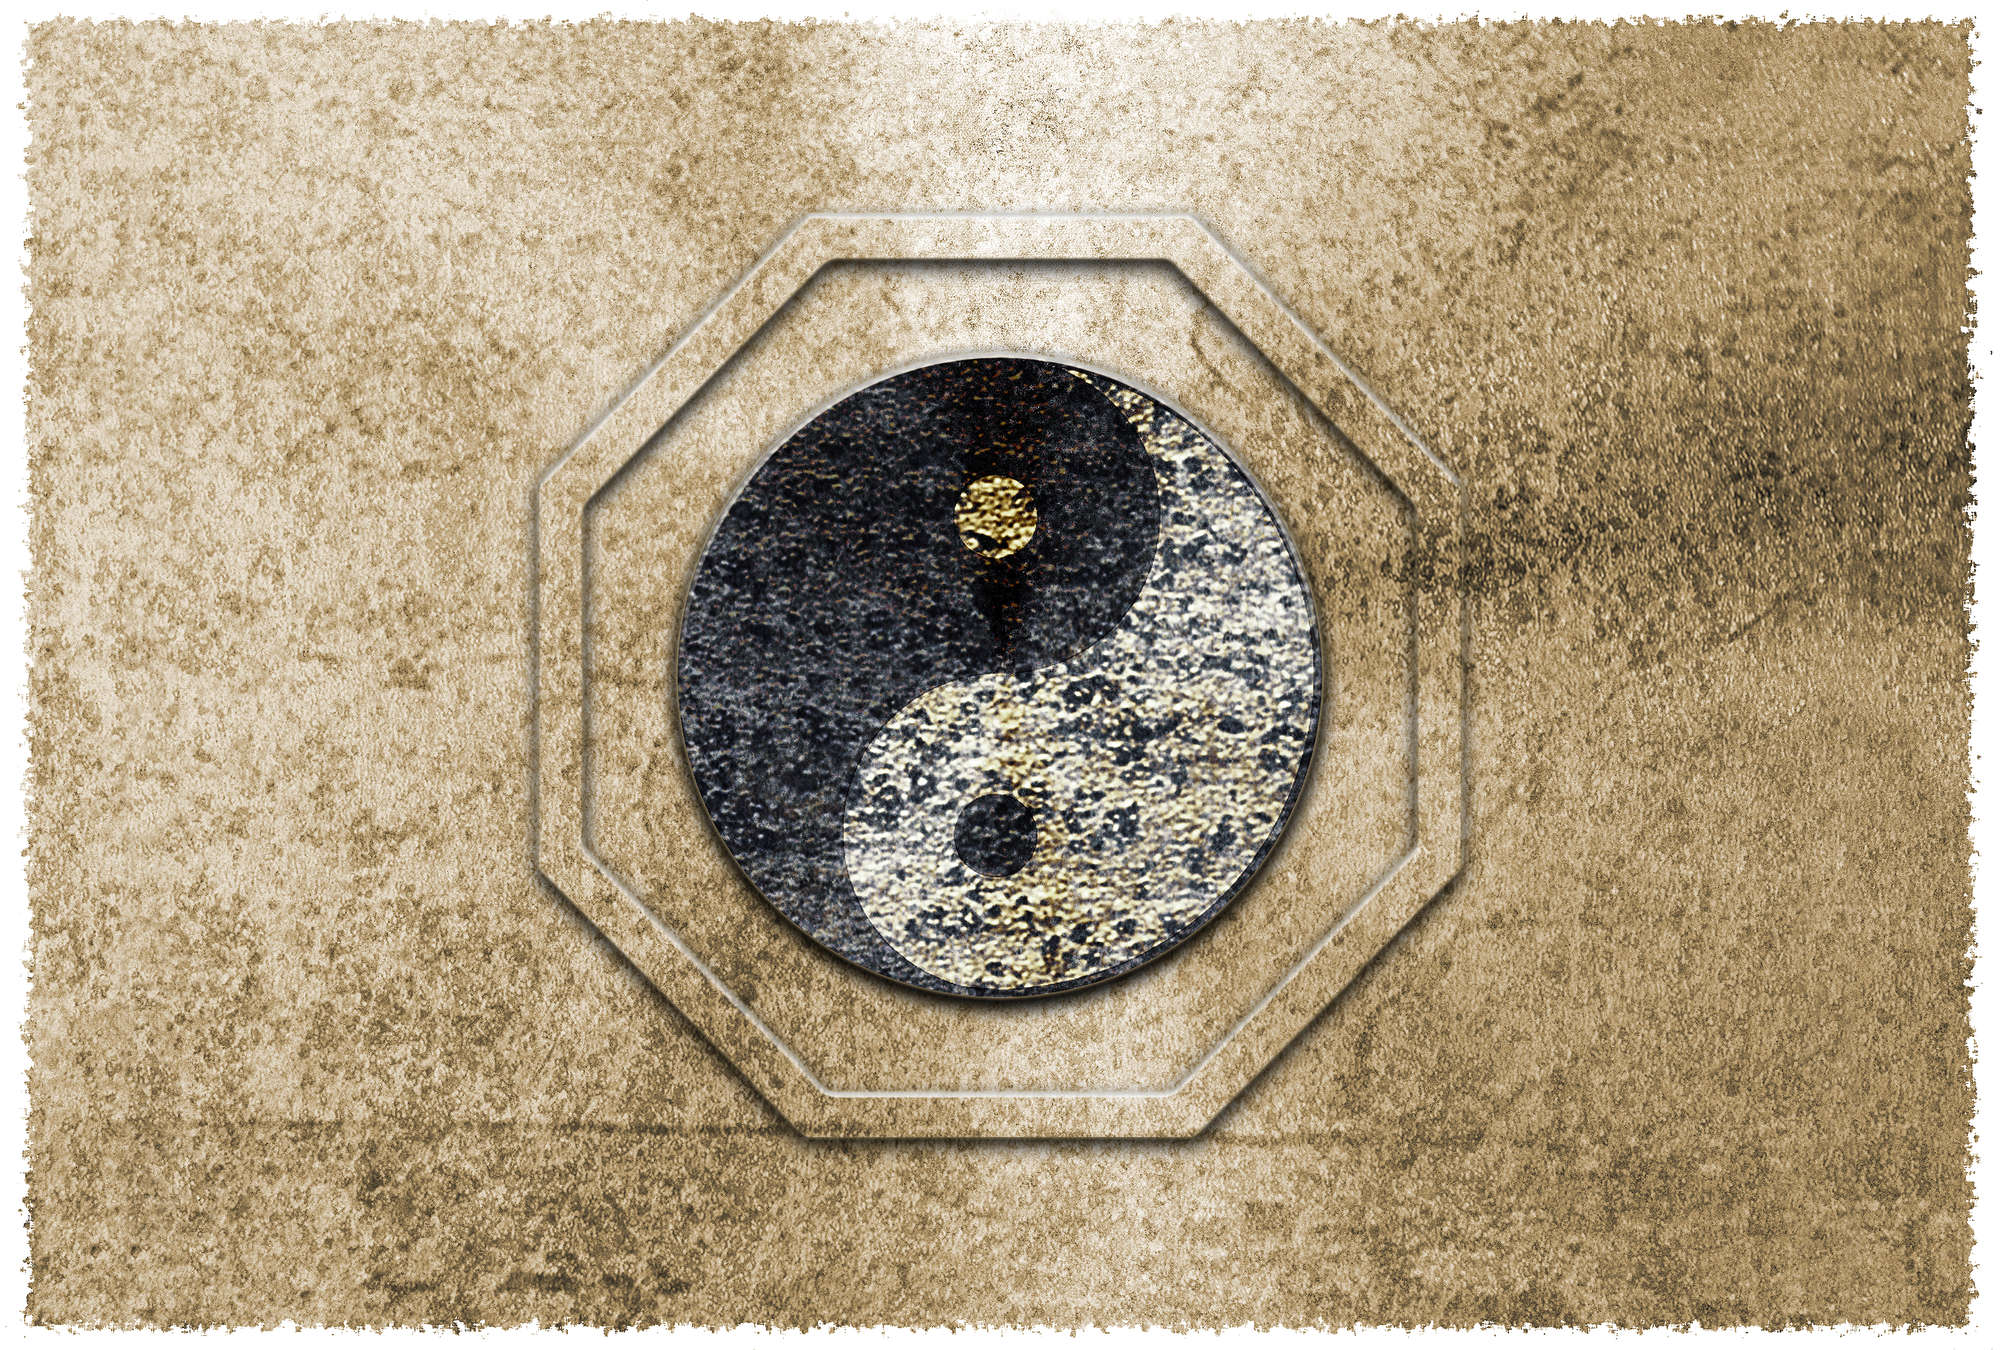             Yin&Yang, carta da parati con simboli asiatici e accenti dorati - Marrone, nero, bianco
        